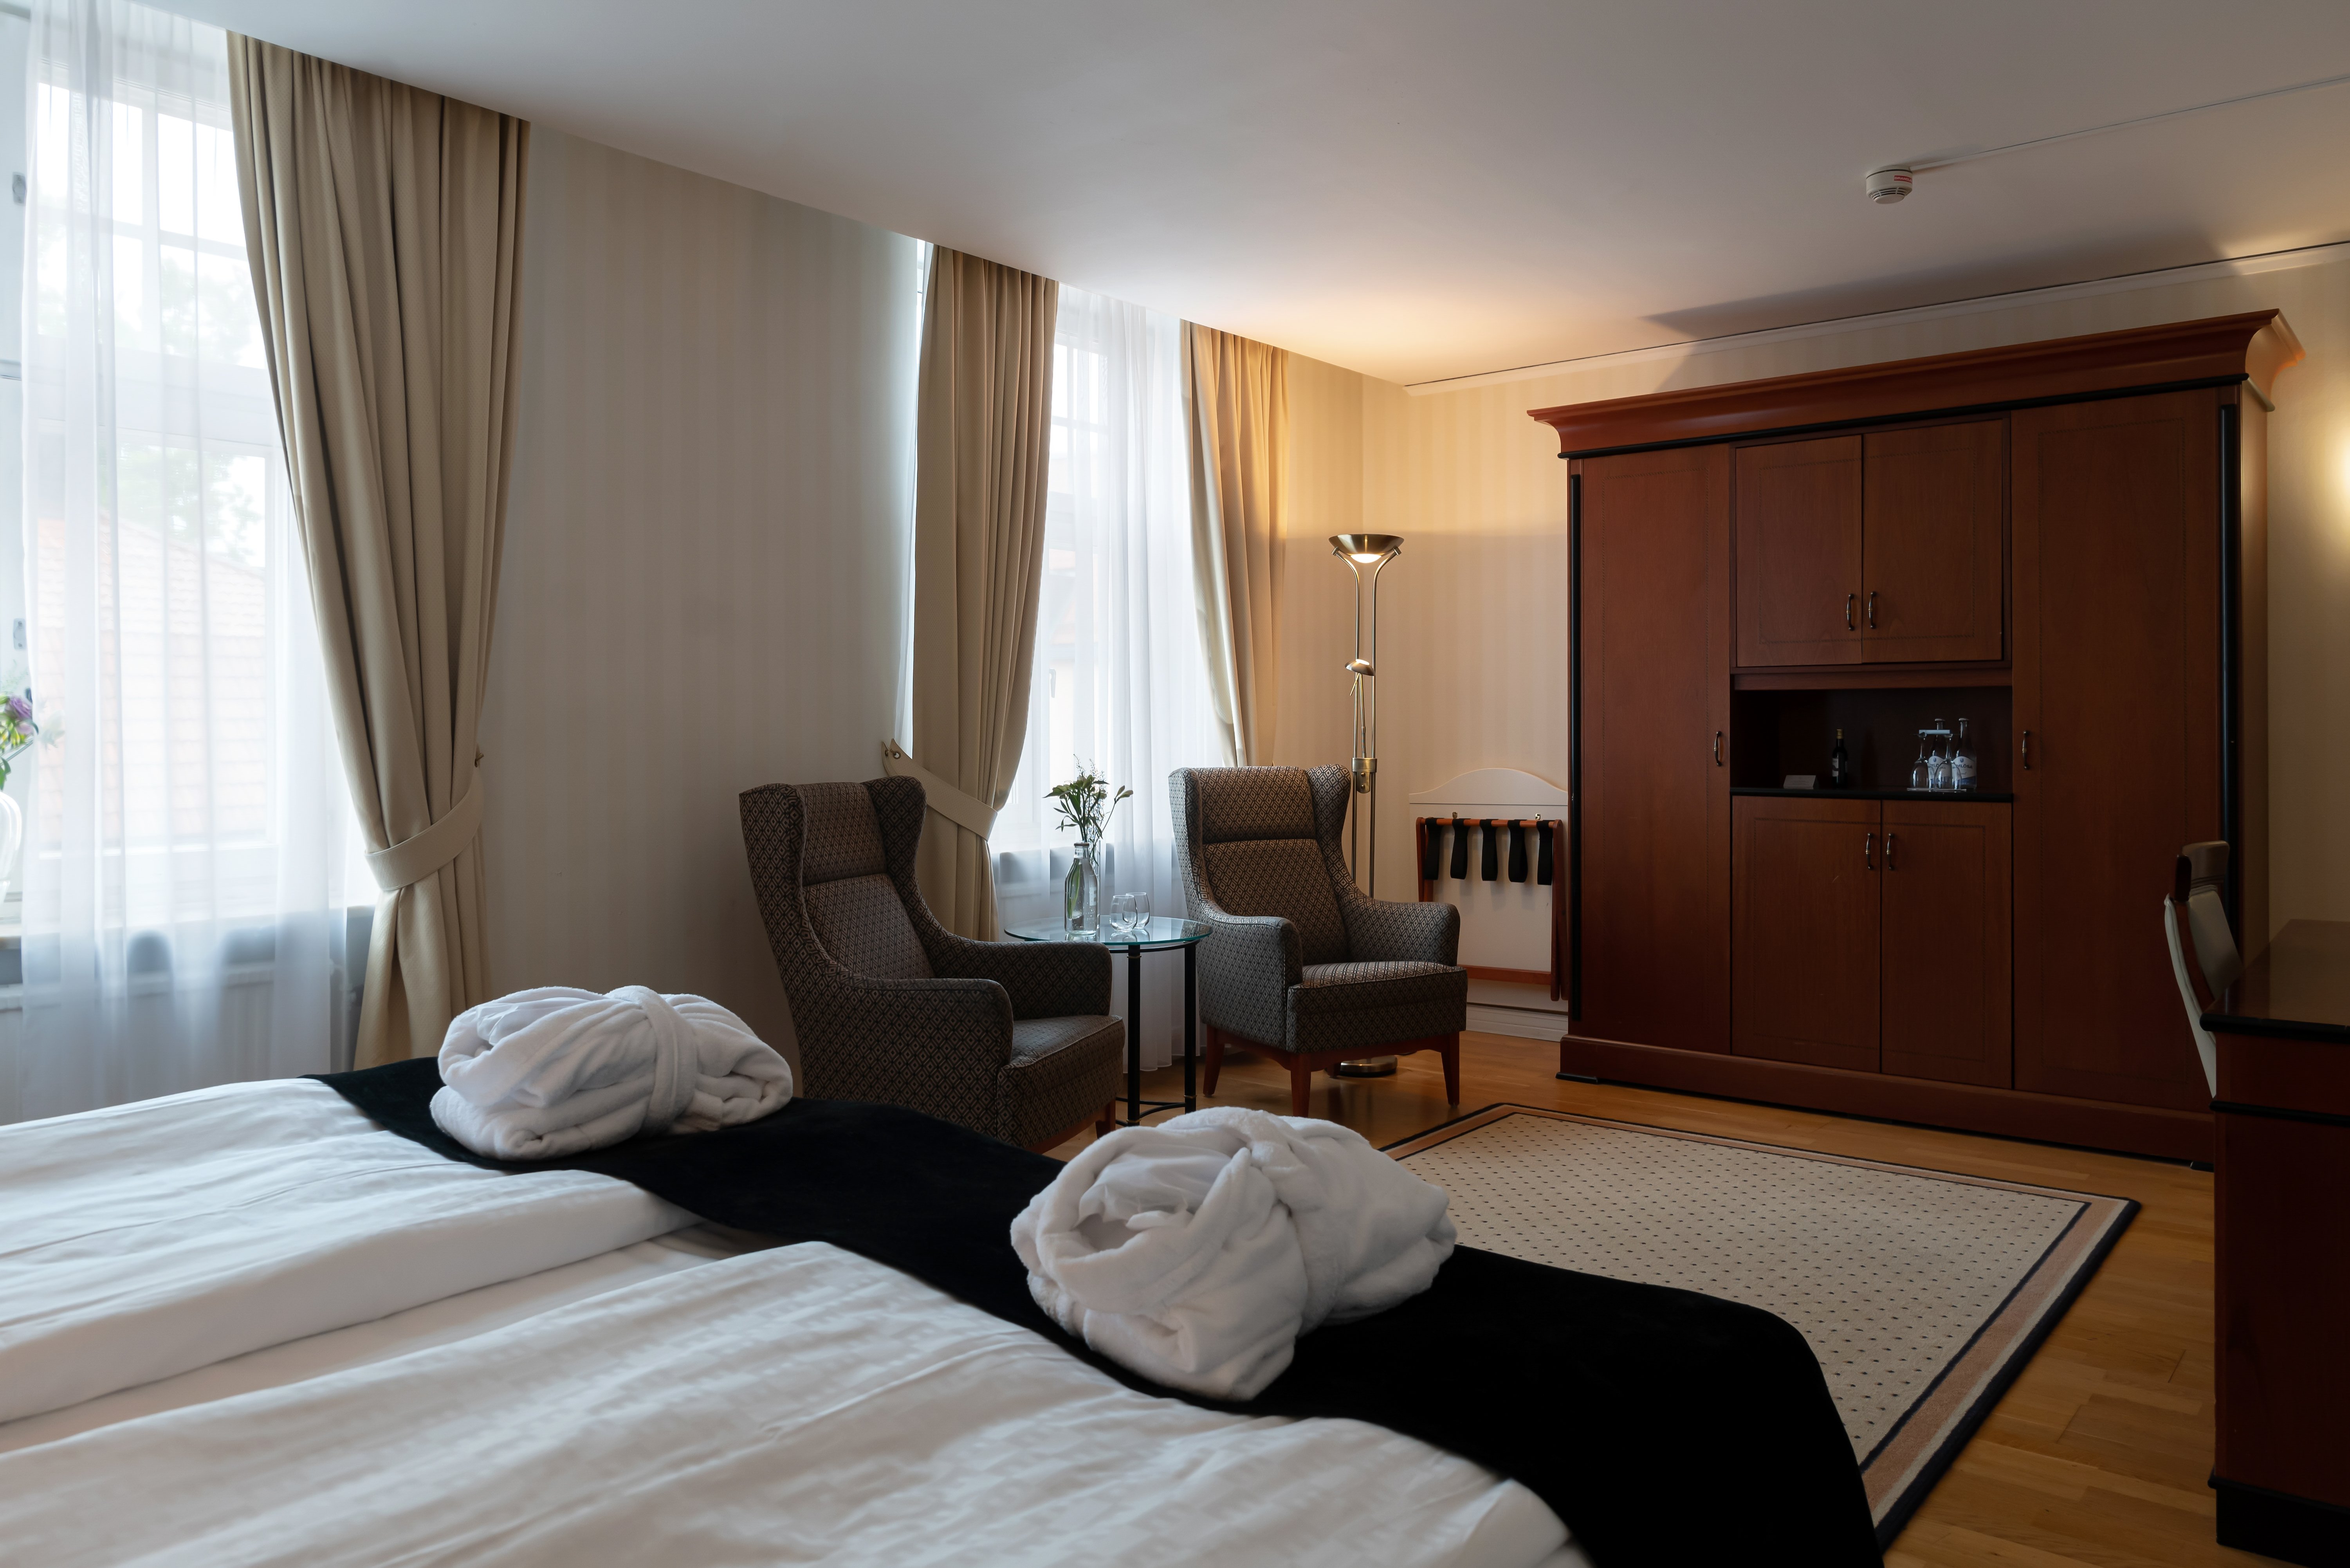 Mysigt hotellrum med morgonrock på säng, garderob och fåtöljer